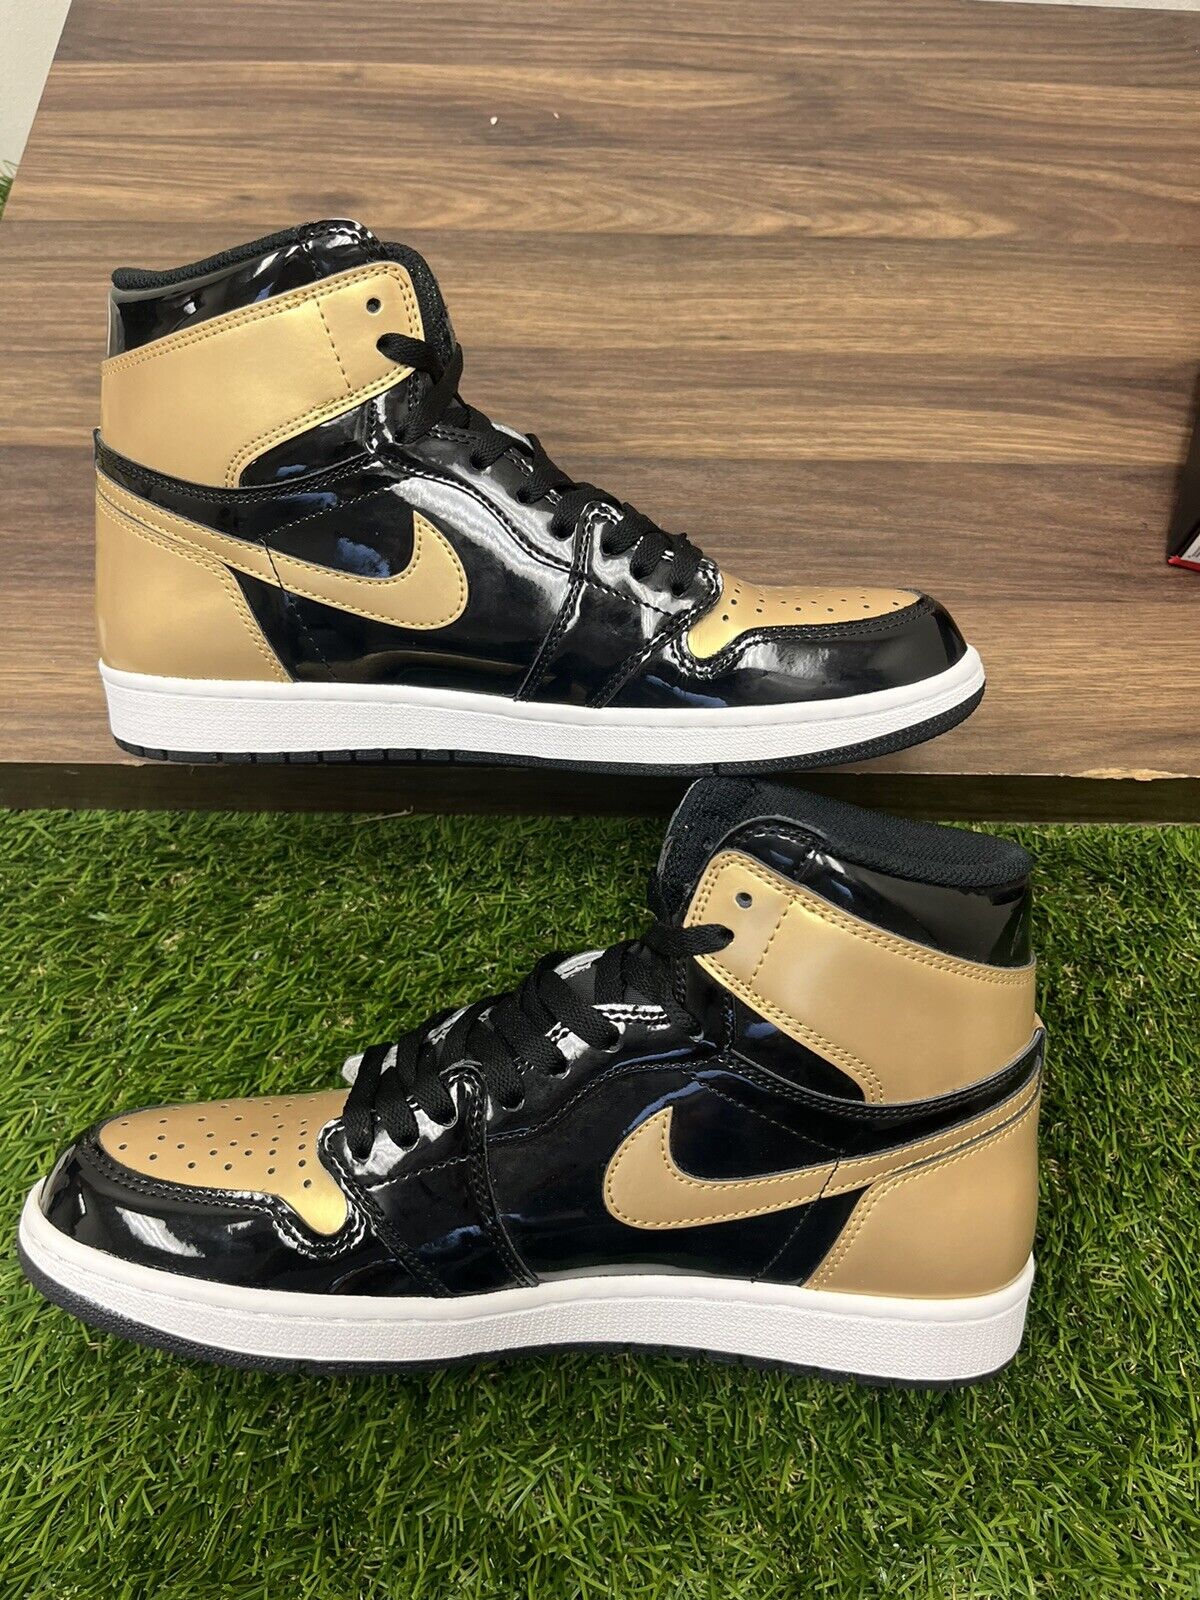 Size 10.5 - Jordan 1 Retro High OG NRG Gold Toe 2018